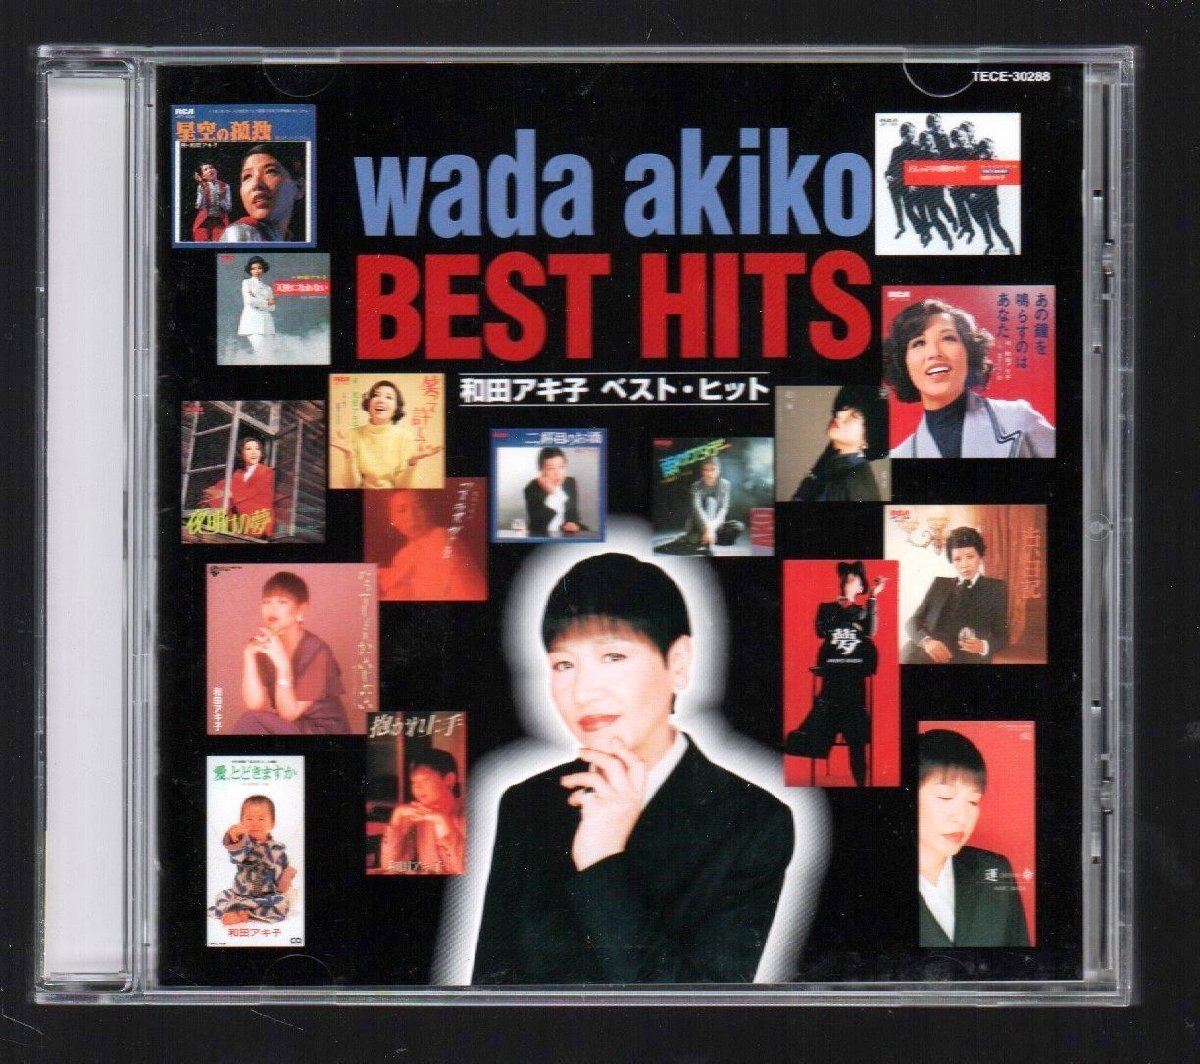 # Wada Akiko #[ лучший хит (BEST HITS)]#! смех ... делать! старый дневник! тот колокольчик . издавать звук.. вы!#TECE-30288#2002/3/21 продажа # прекрасный товар #